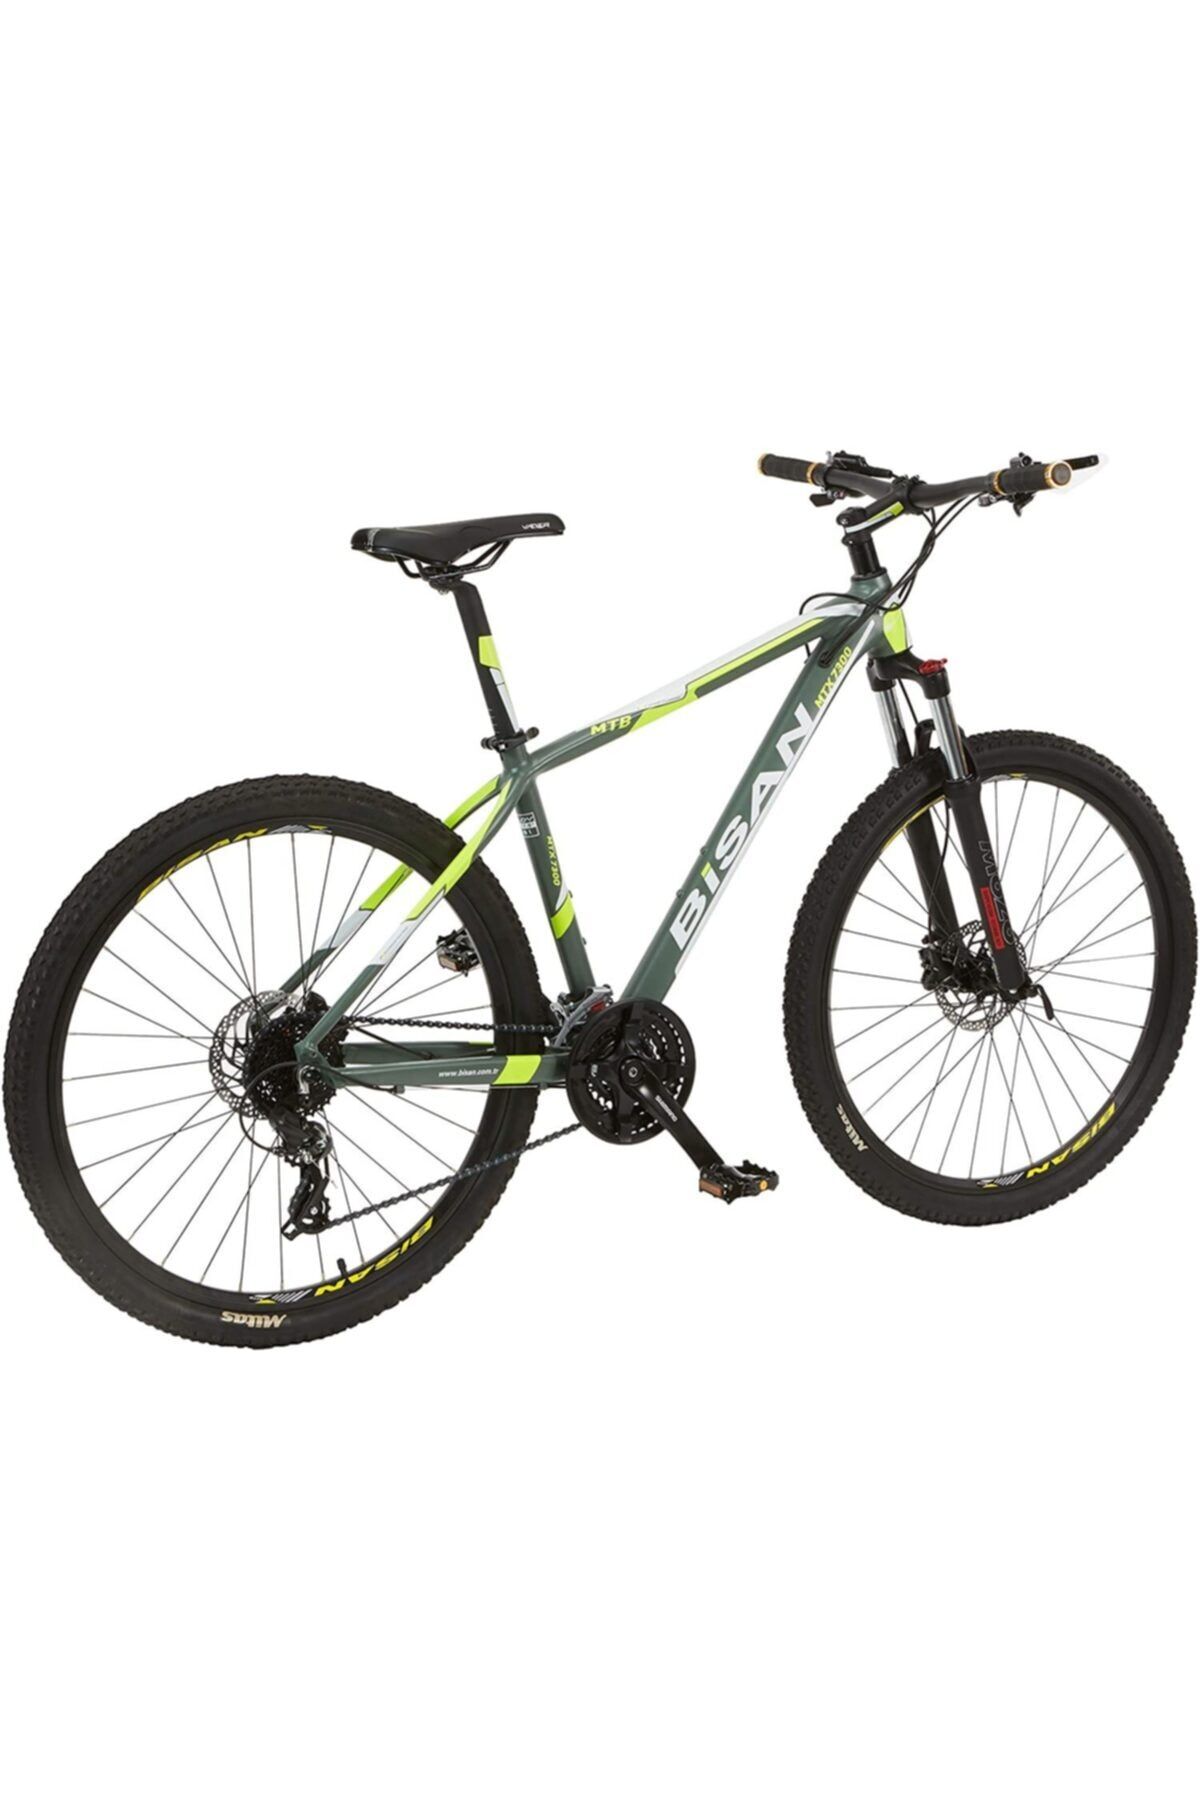 Bisan Kadro 24 Vites Gri/yeşil Bisiklet  46cm